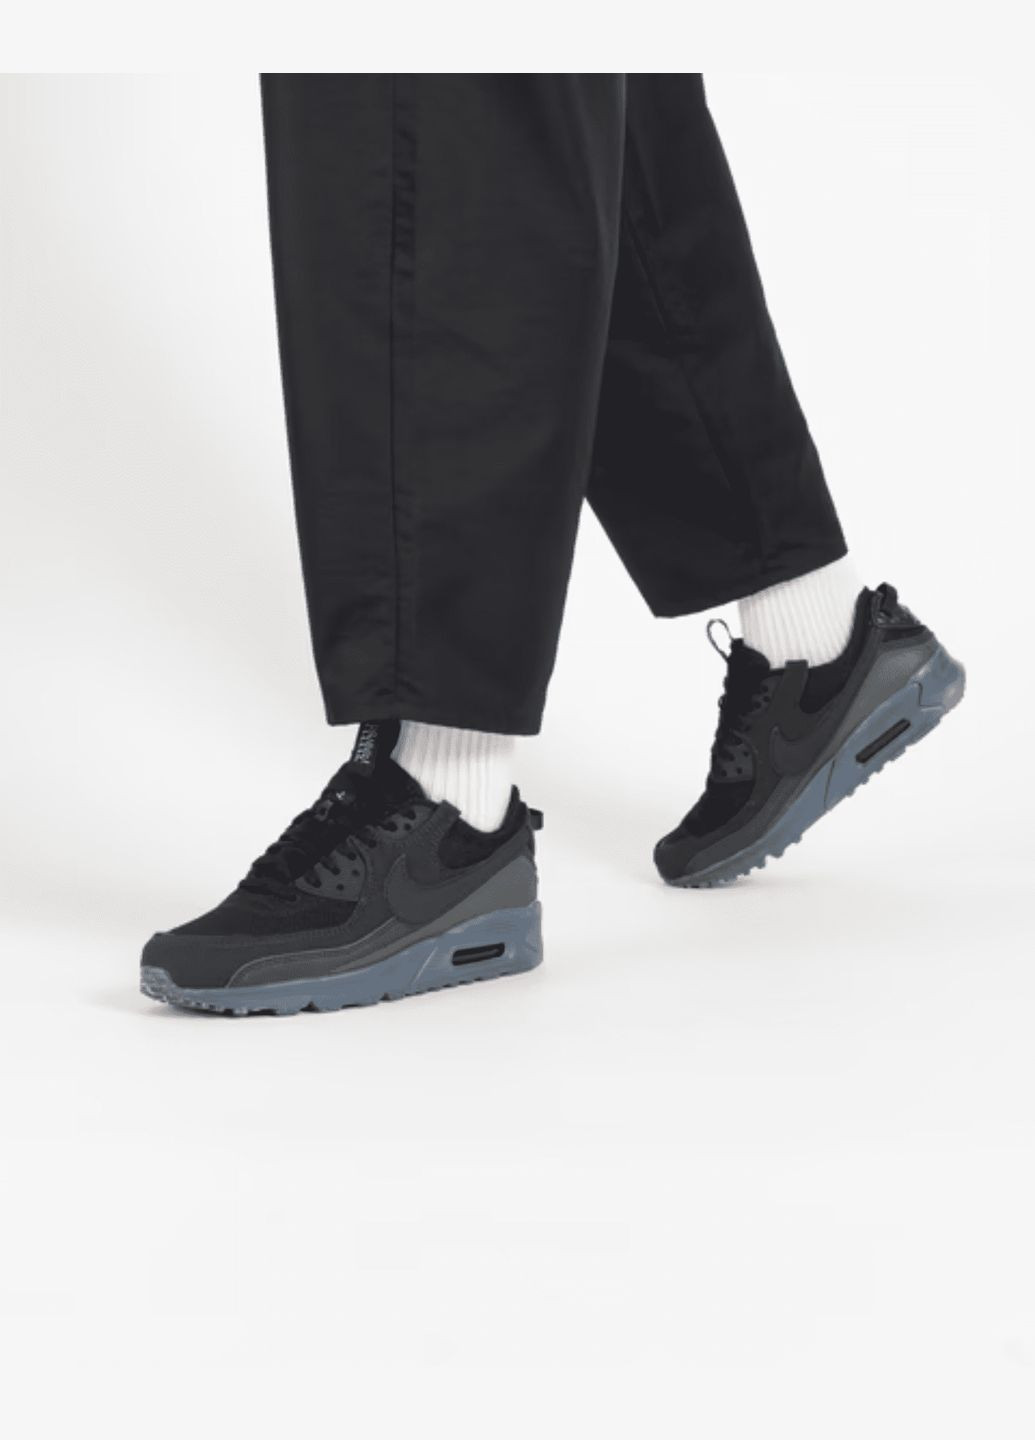 Синие всесезонные кроссовки мужские оригинал кроссовки мужские air max terrascape 90 dq3987-002 весна-осень текстиль синтетика черные Nike